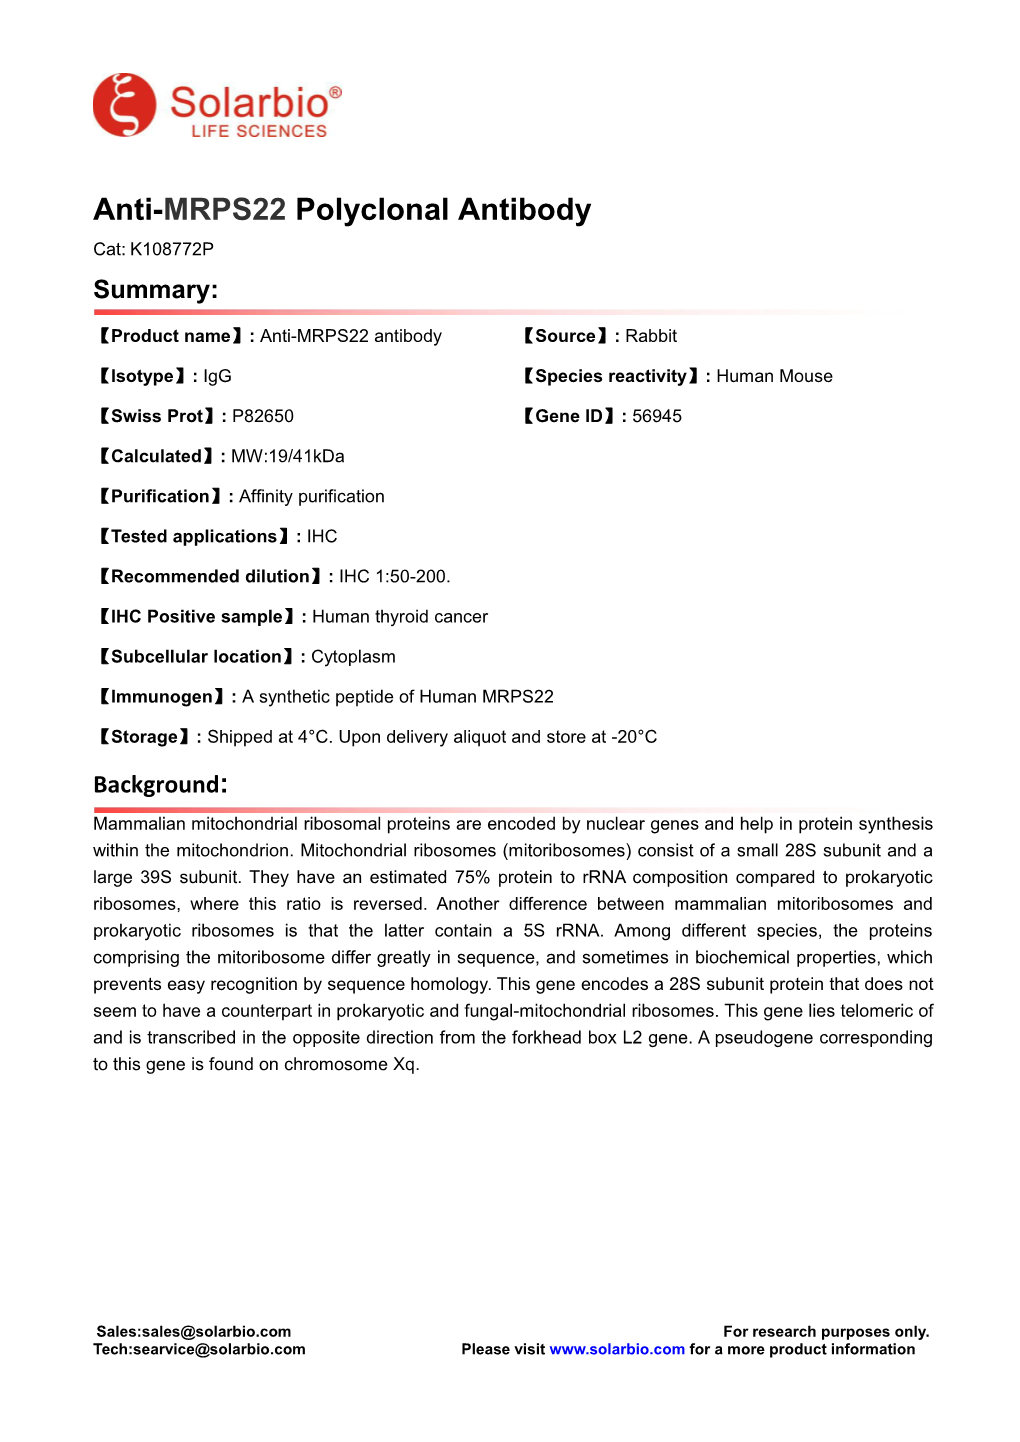 Anti-MRPS22 Polyclonal Antibody Cat: K108772P Summary